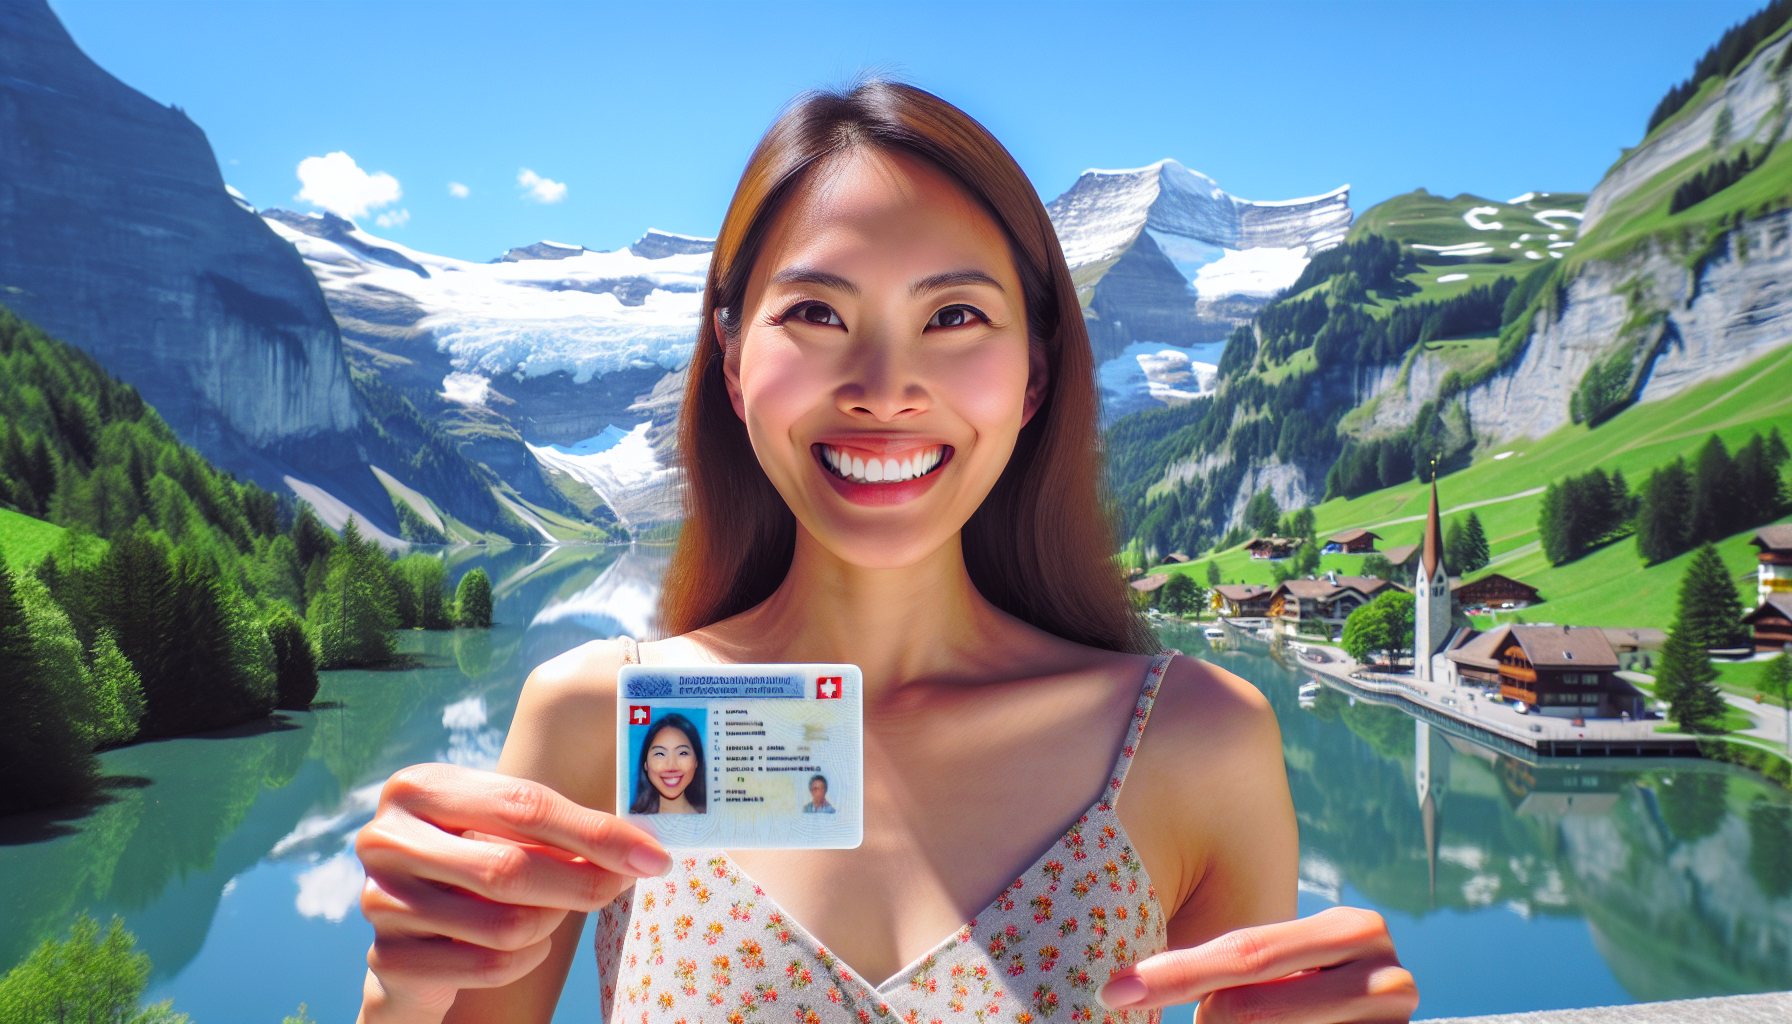 découvrez les étapes à suivre pour réussir l'examen pratique du permis de conduire en suisse et obtenir votre précieux sésame pour circuler sur les routes en toute légalité.